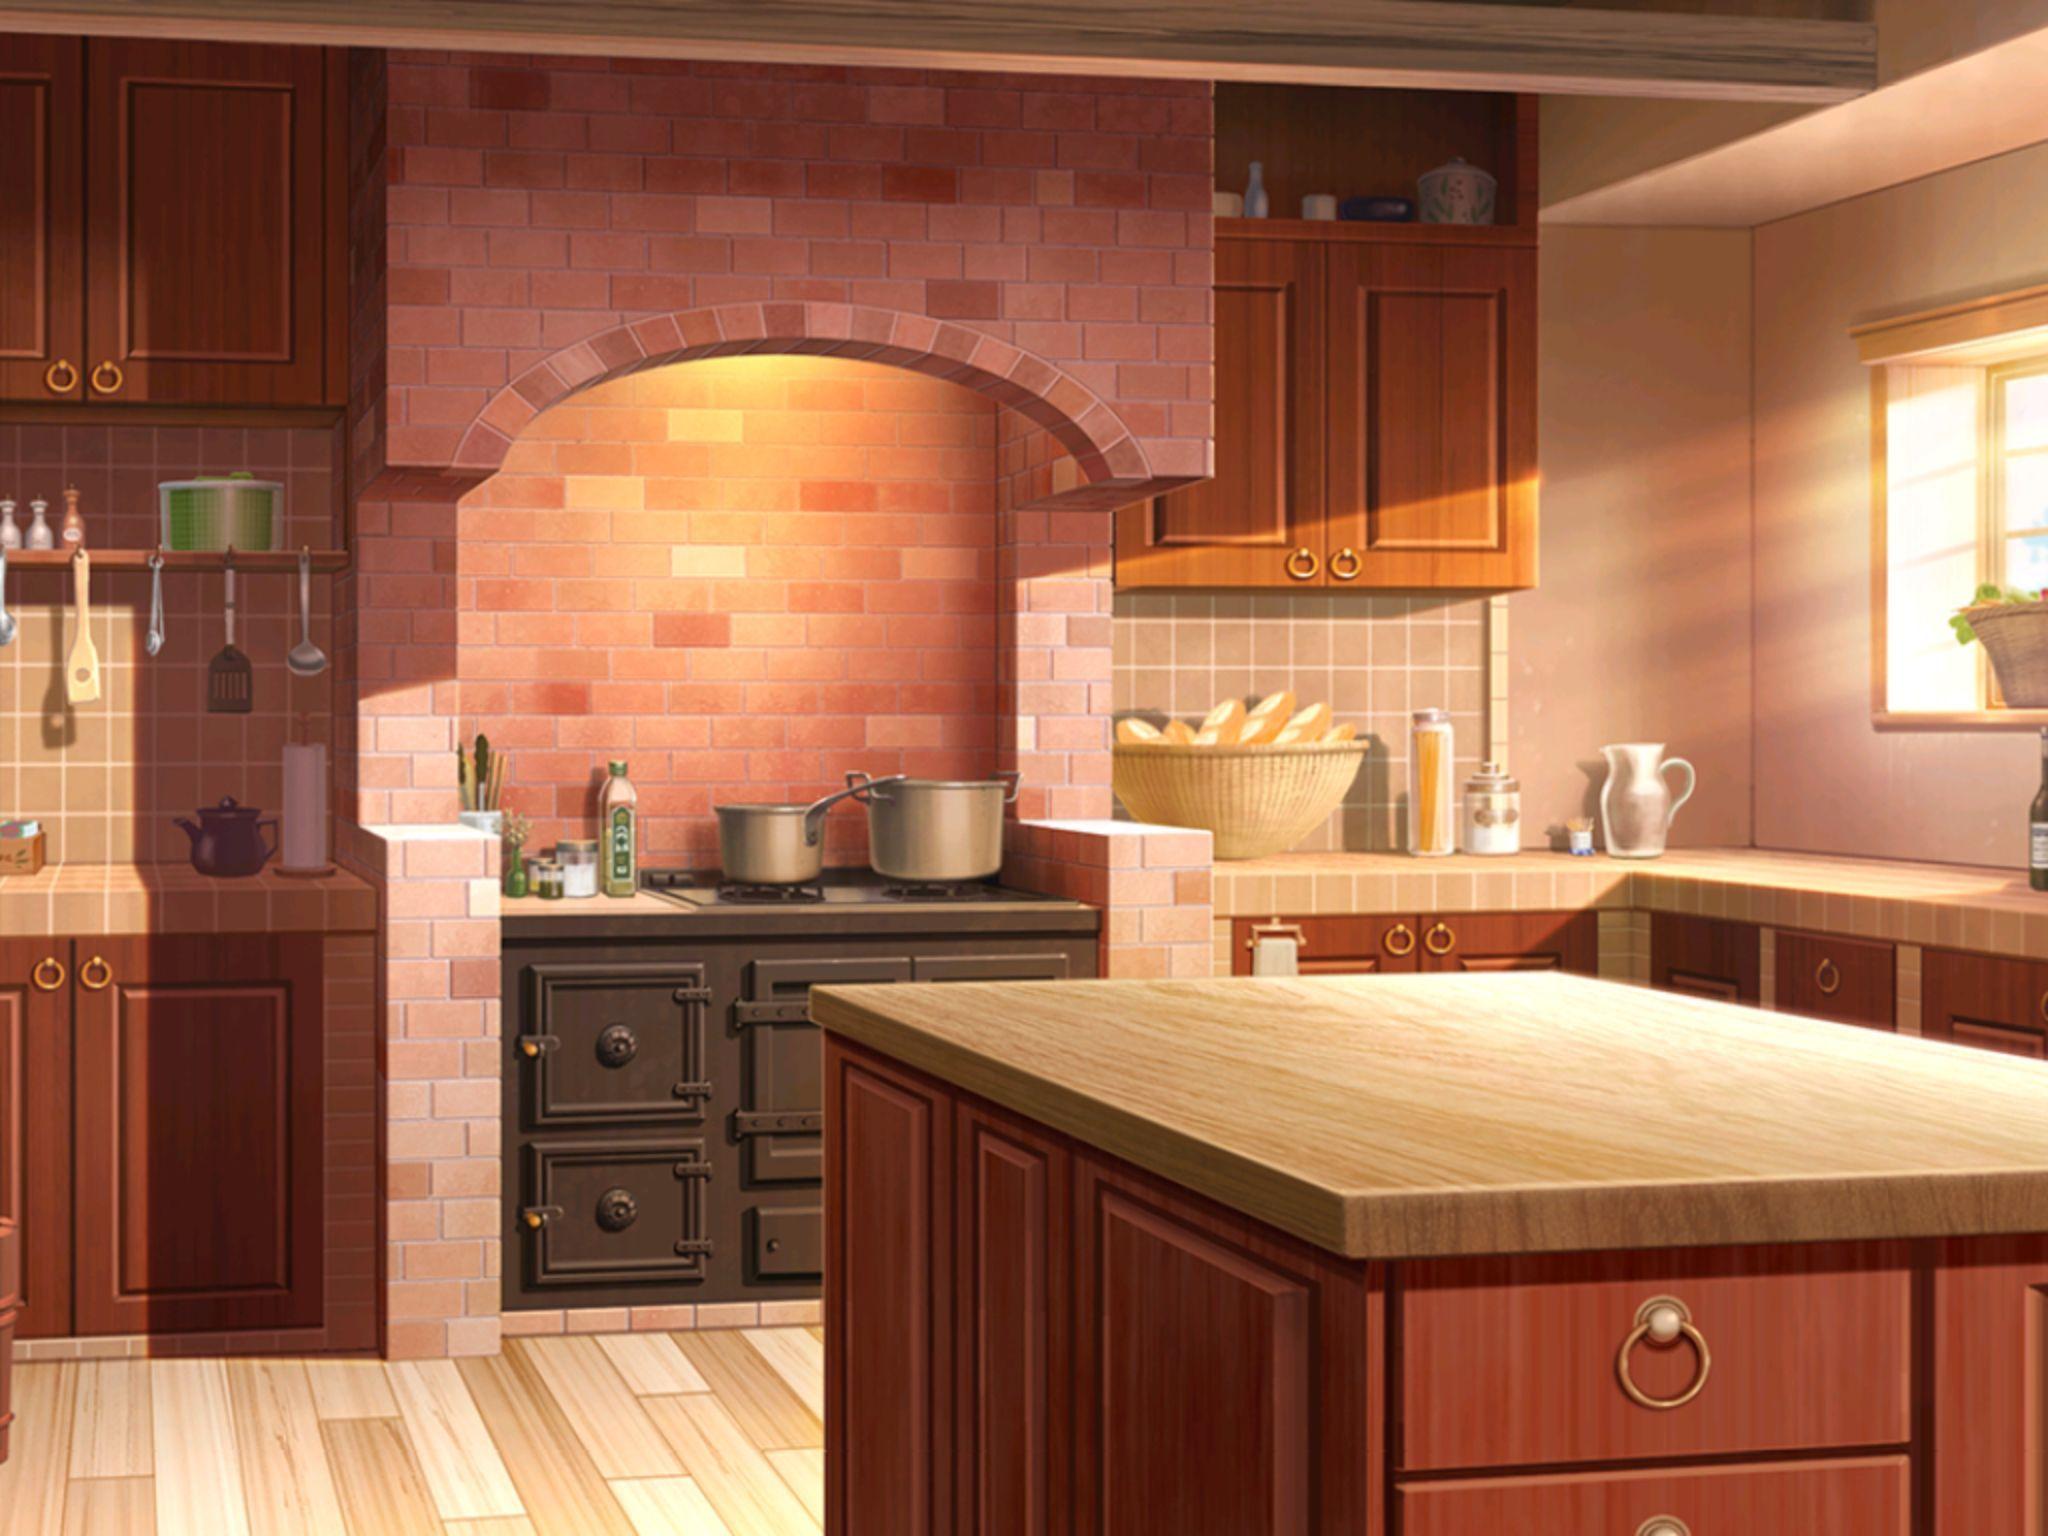 anime kitchen interior design